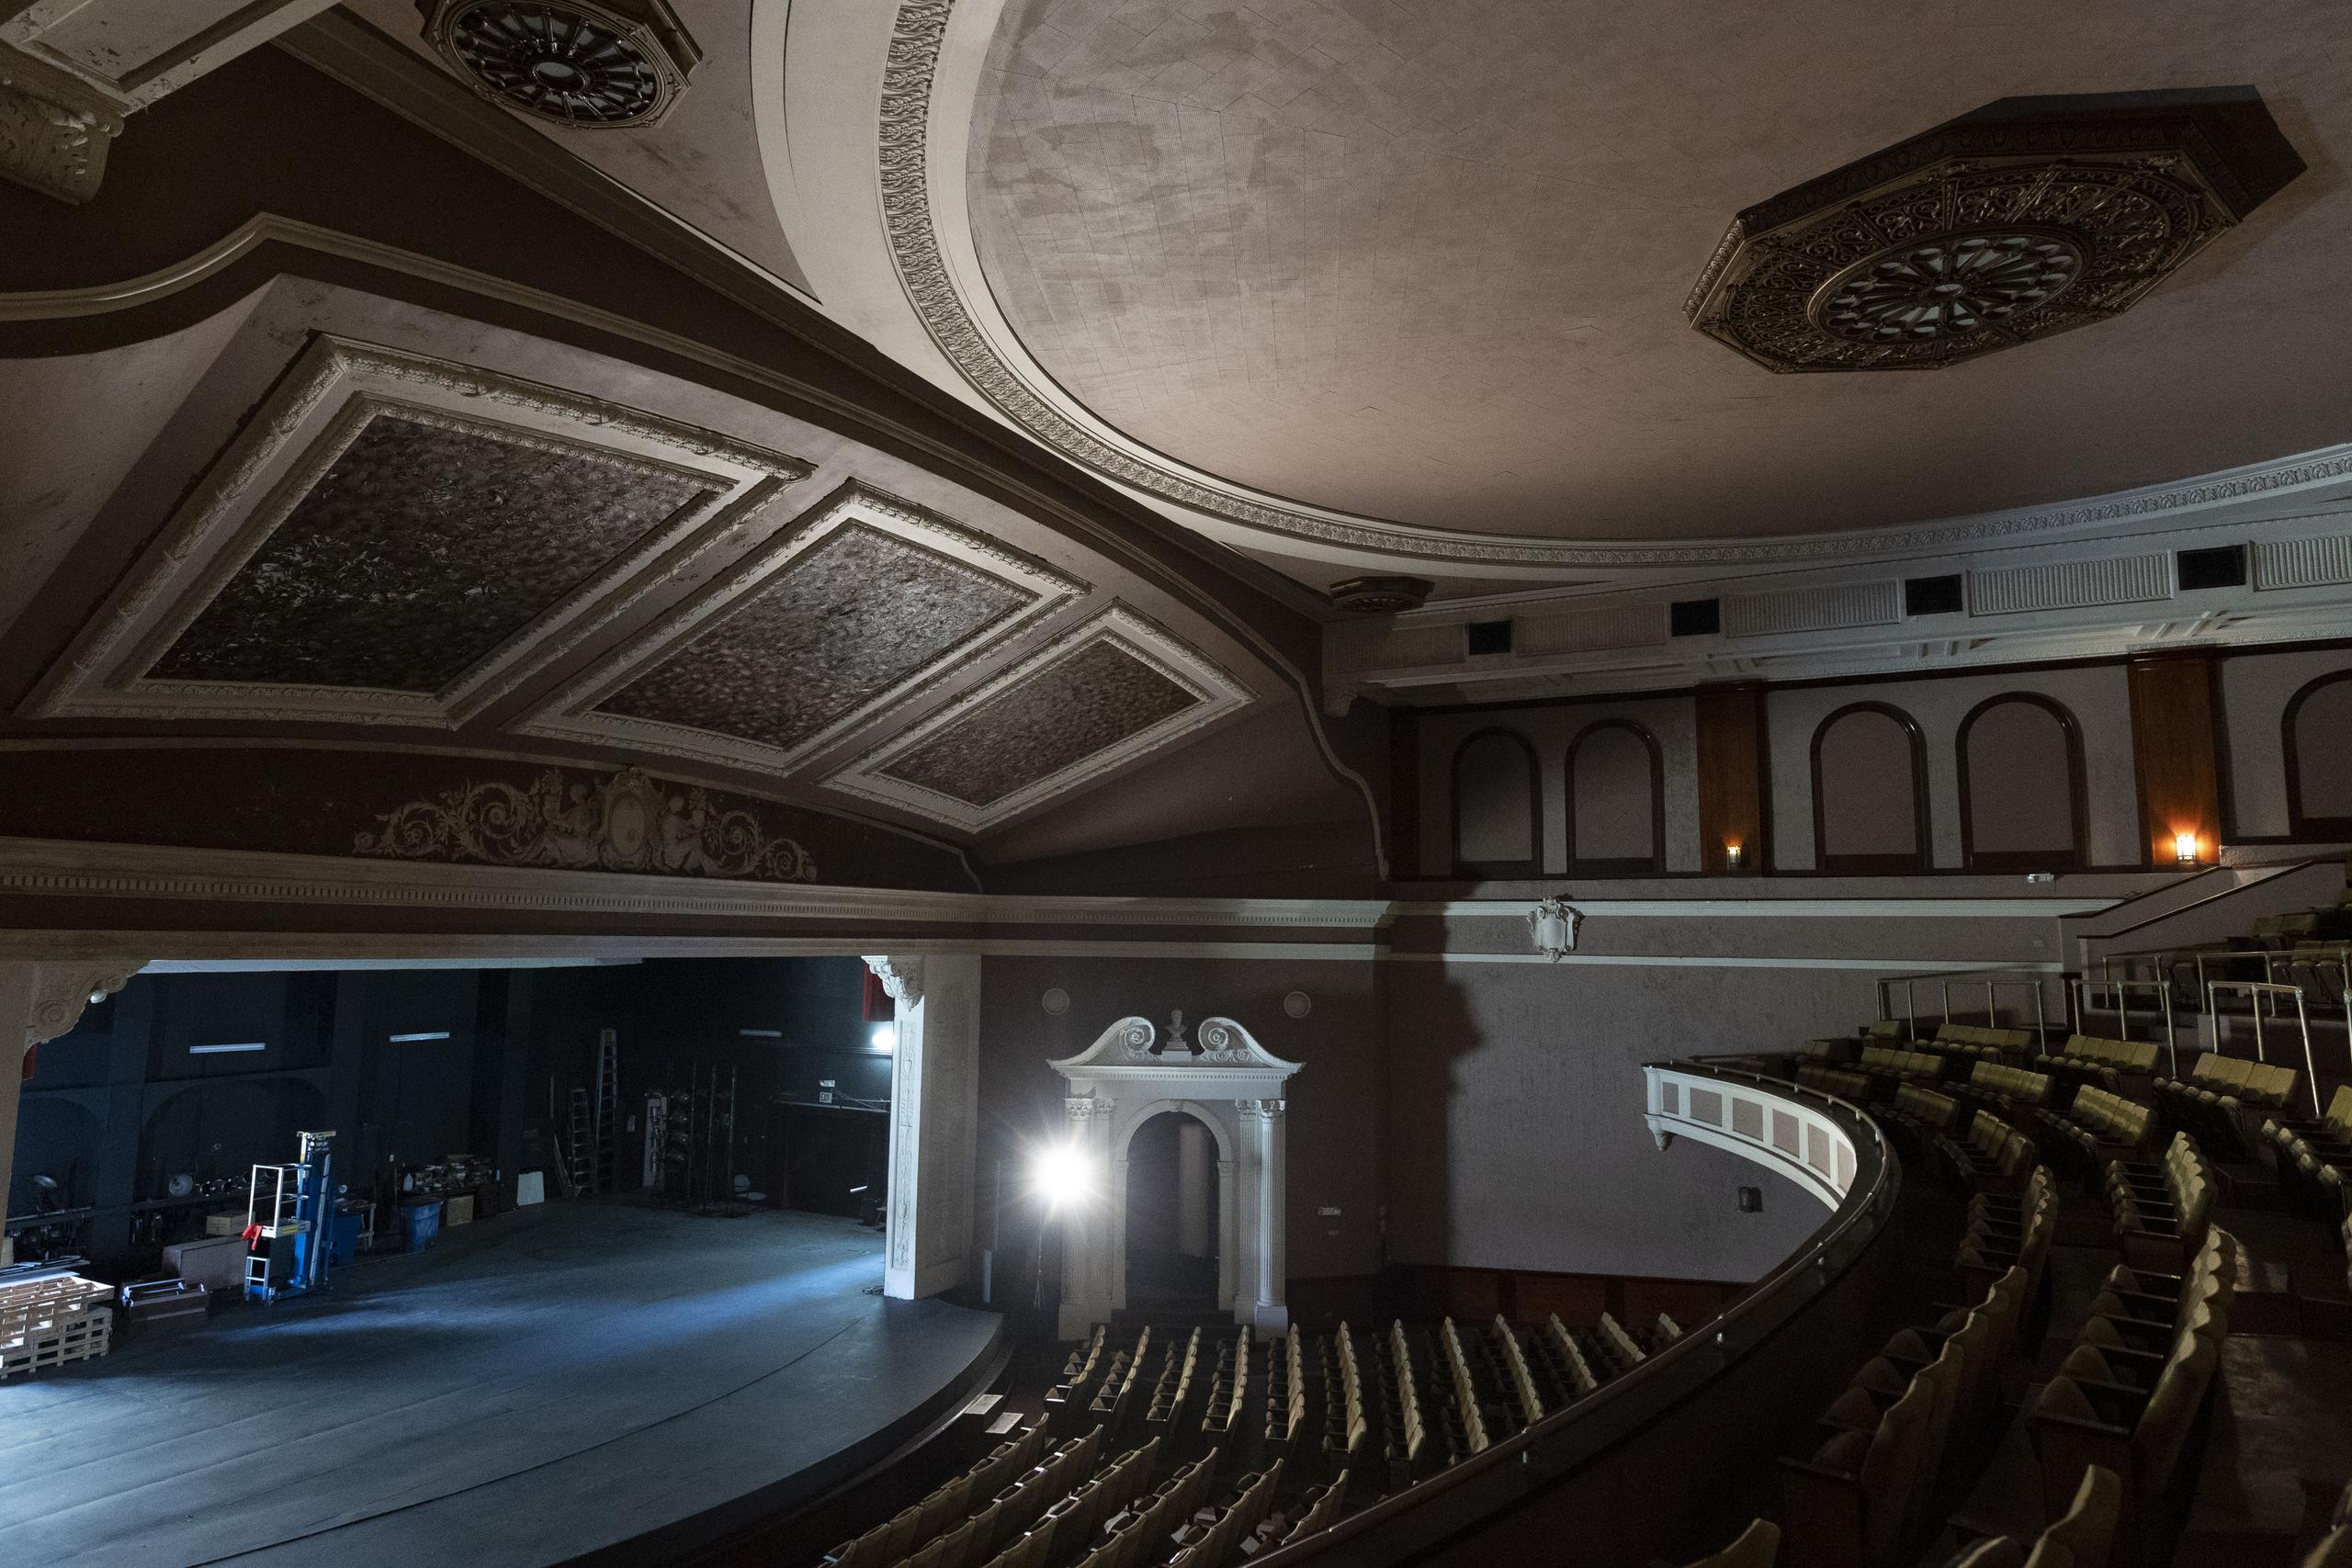 El teatro La Perla de Ponce sufrió daños en el interior debido en su mayoría a las filtraciones de agua causadas por el huracán María (2017).